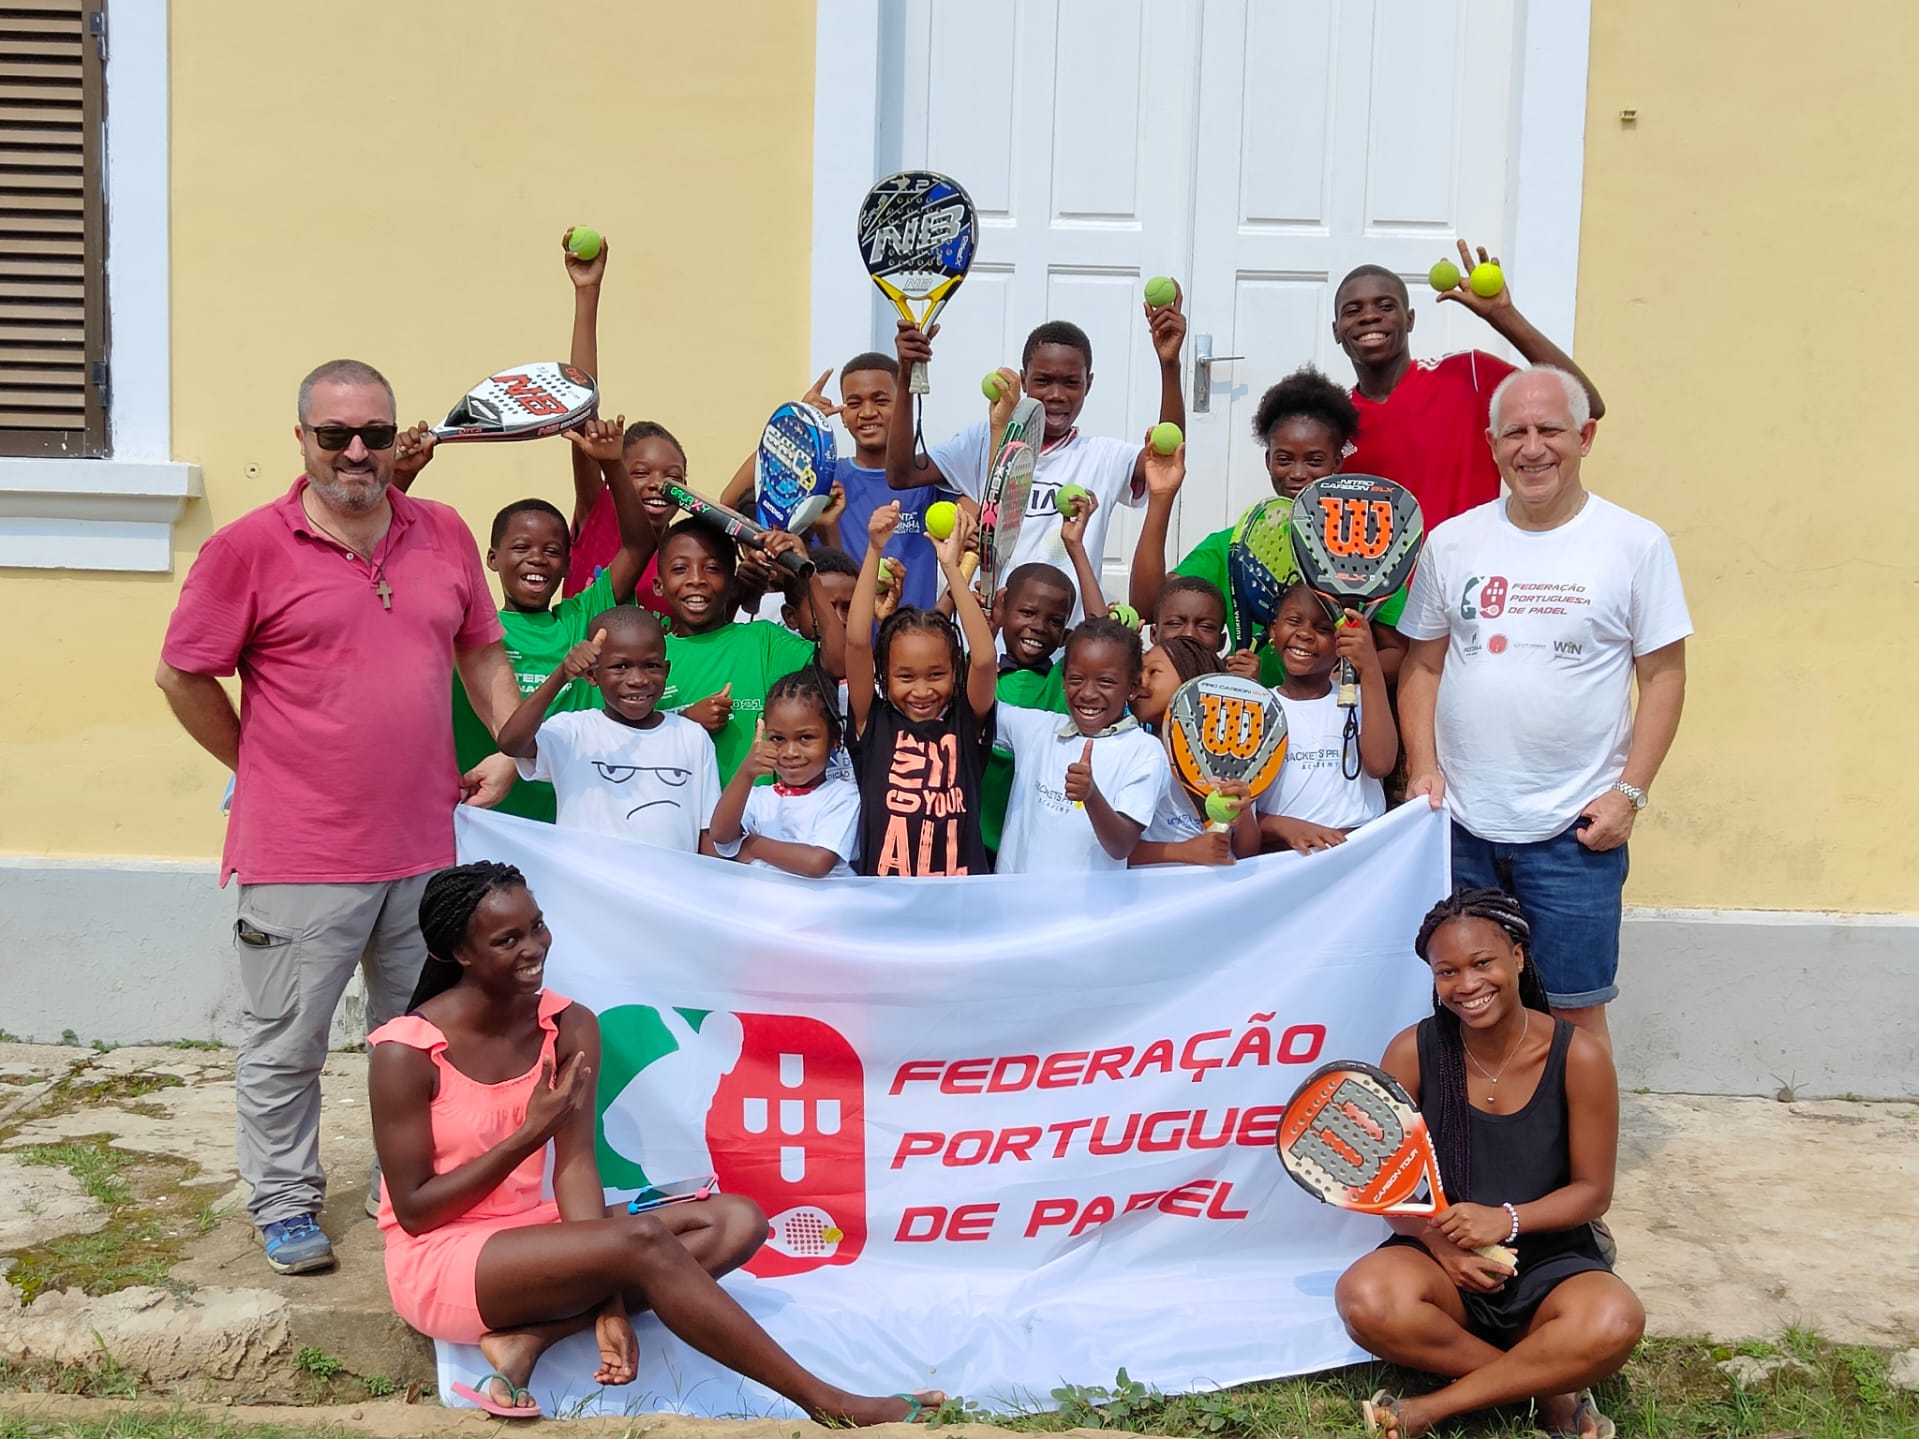 Wielka inicjatywa federacji portugalskiej w Principe